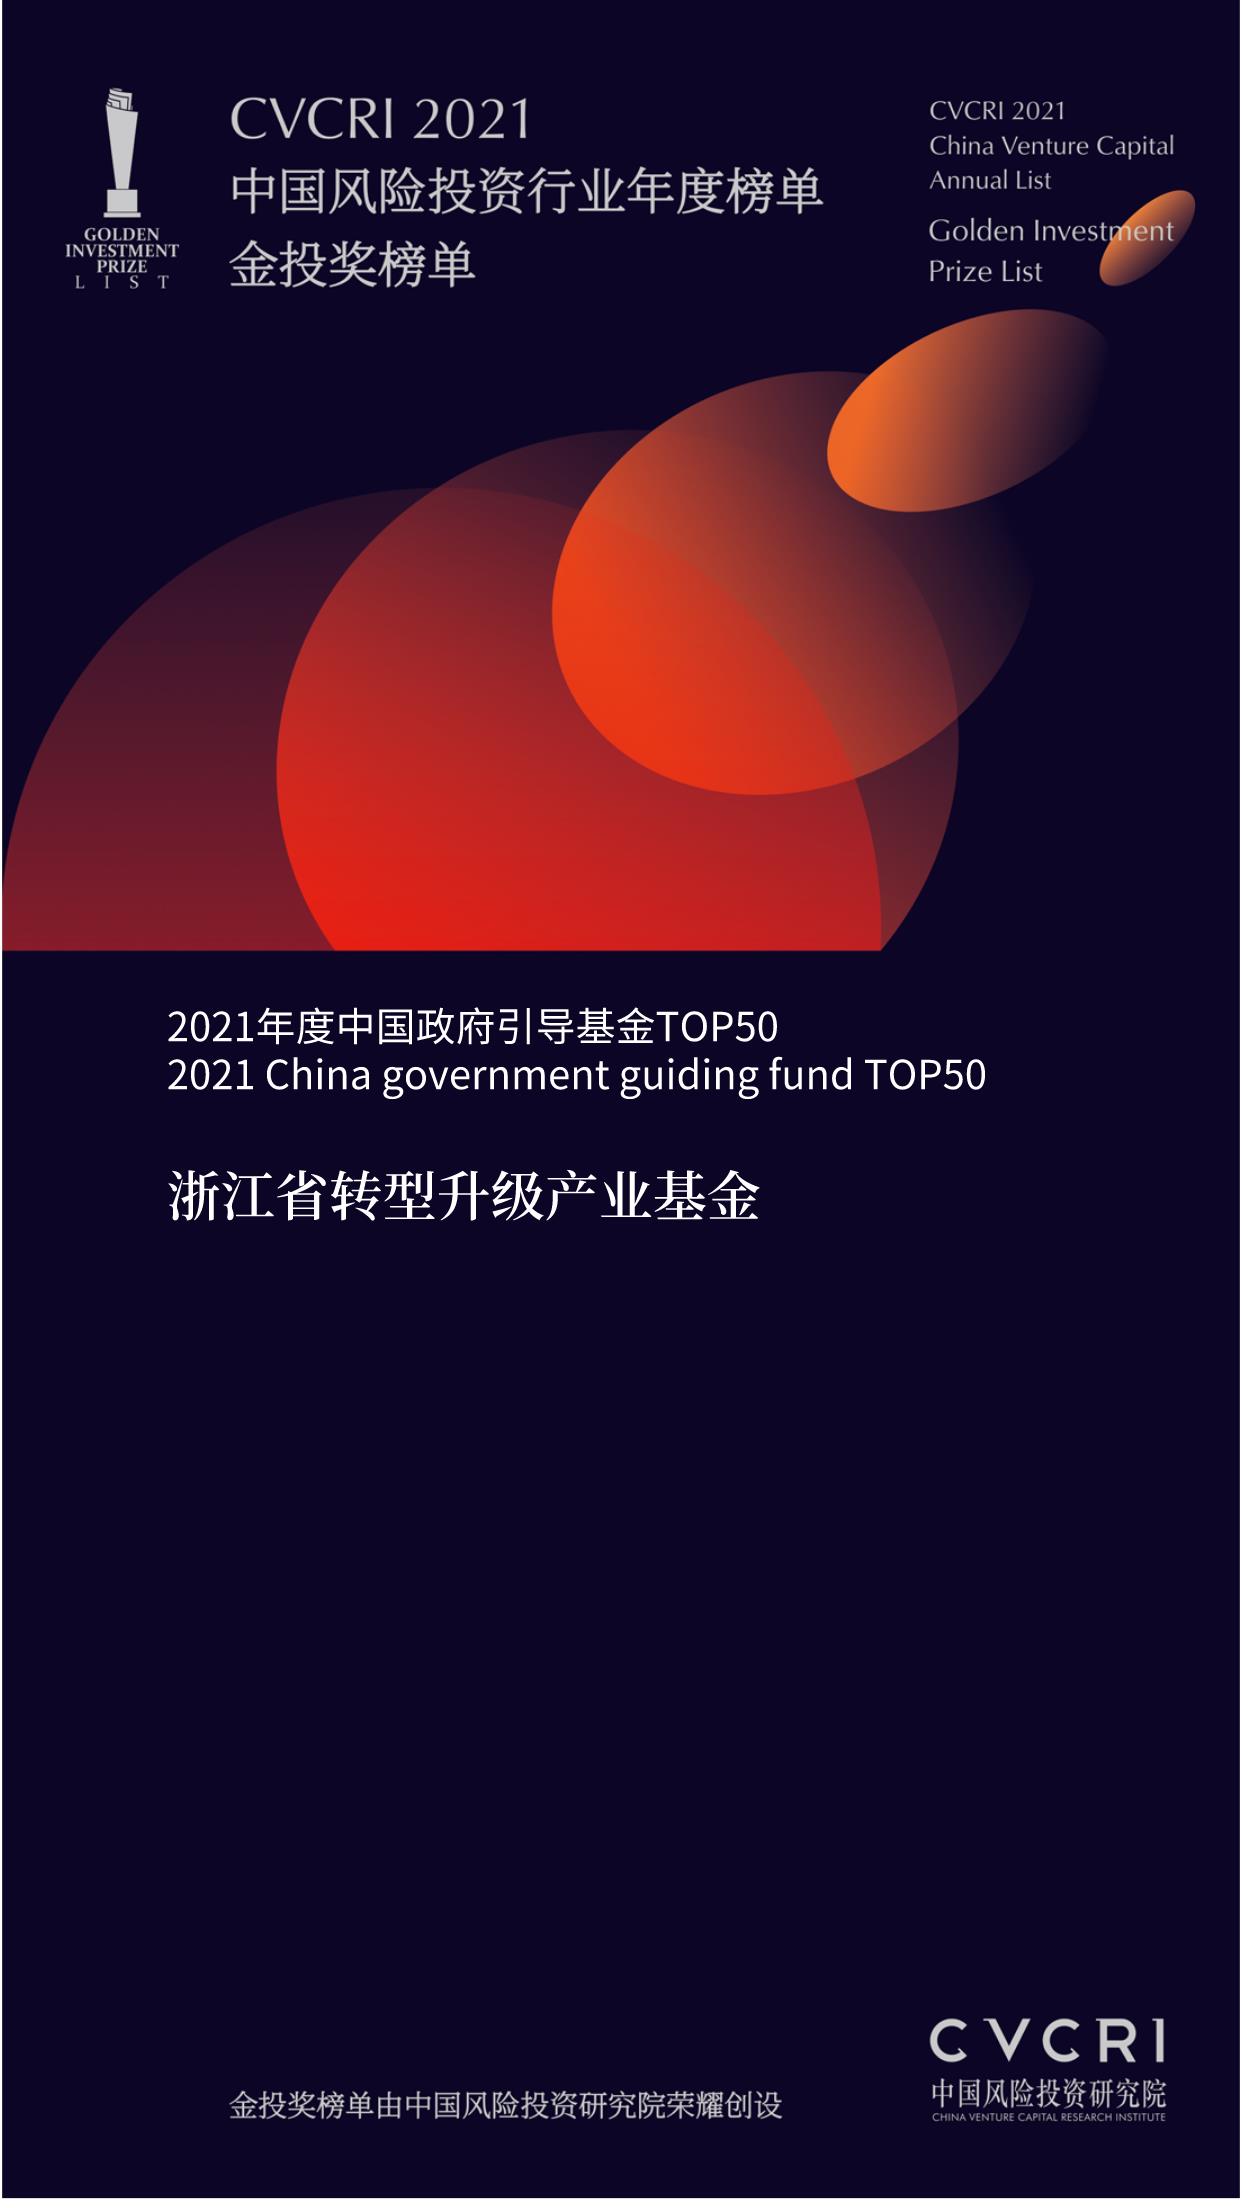 中国风险投资研究院2021年度金投奖